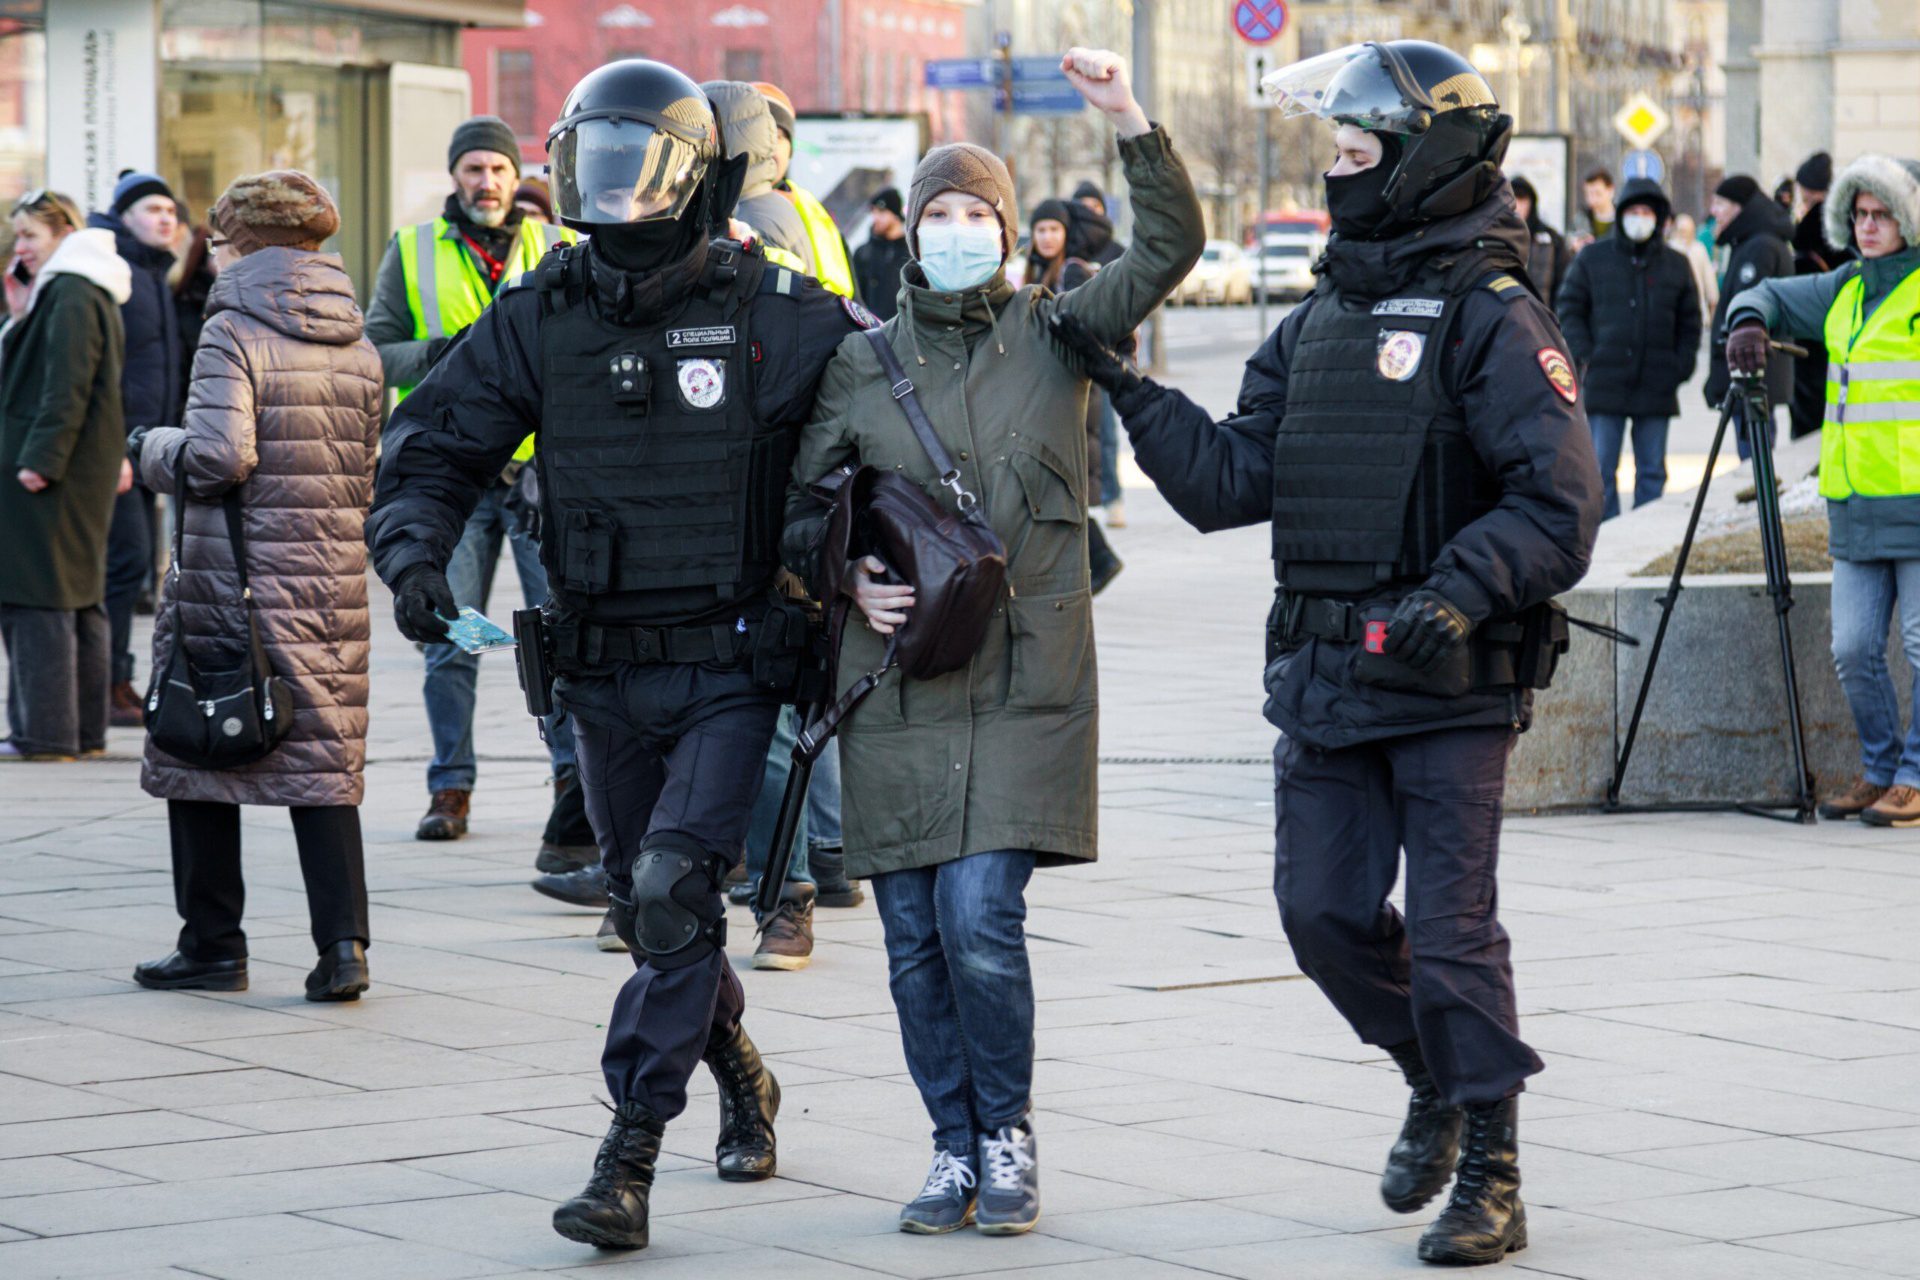 Moskau, Ende Februar 2022: Polizisten halten eine Demonstrantin gegen den Krieg fest. Foto: Konstantin Lenkov/Shutterstock